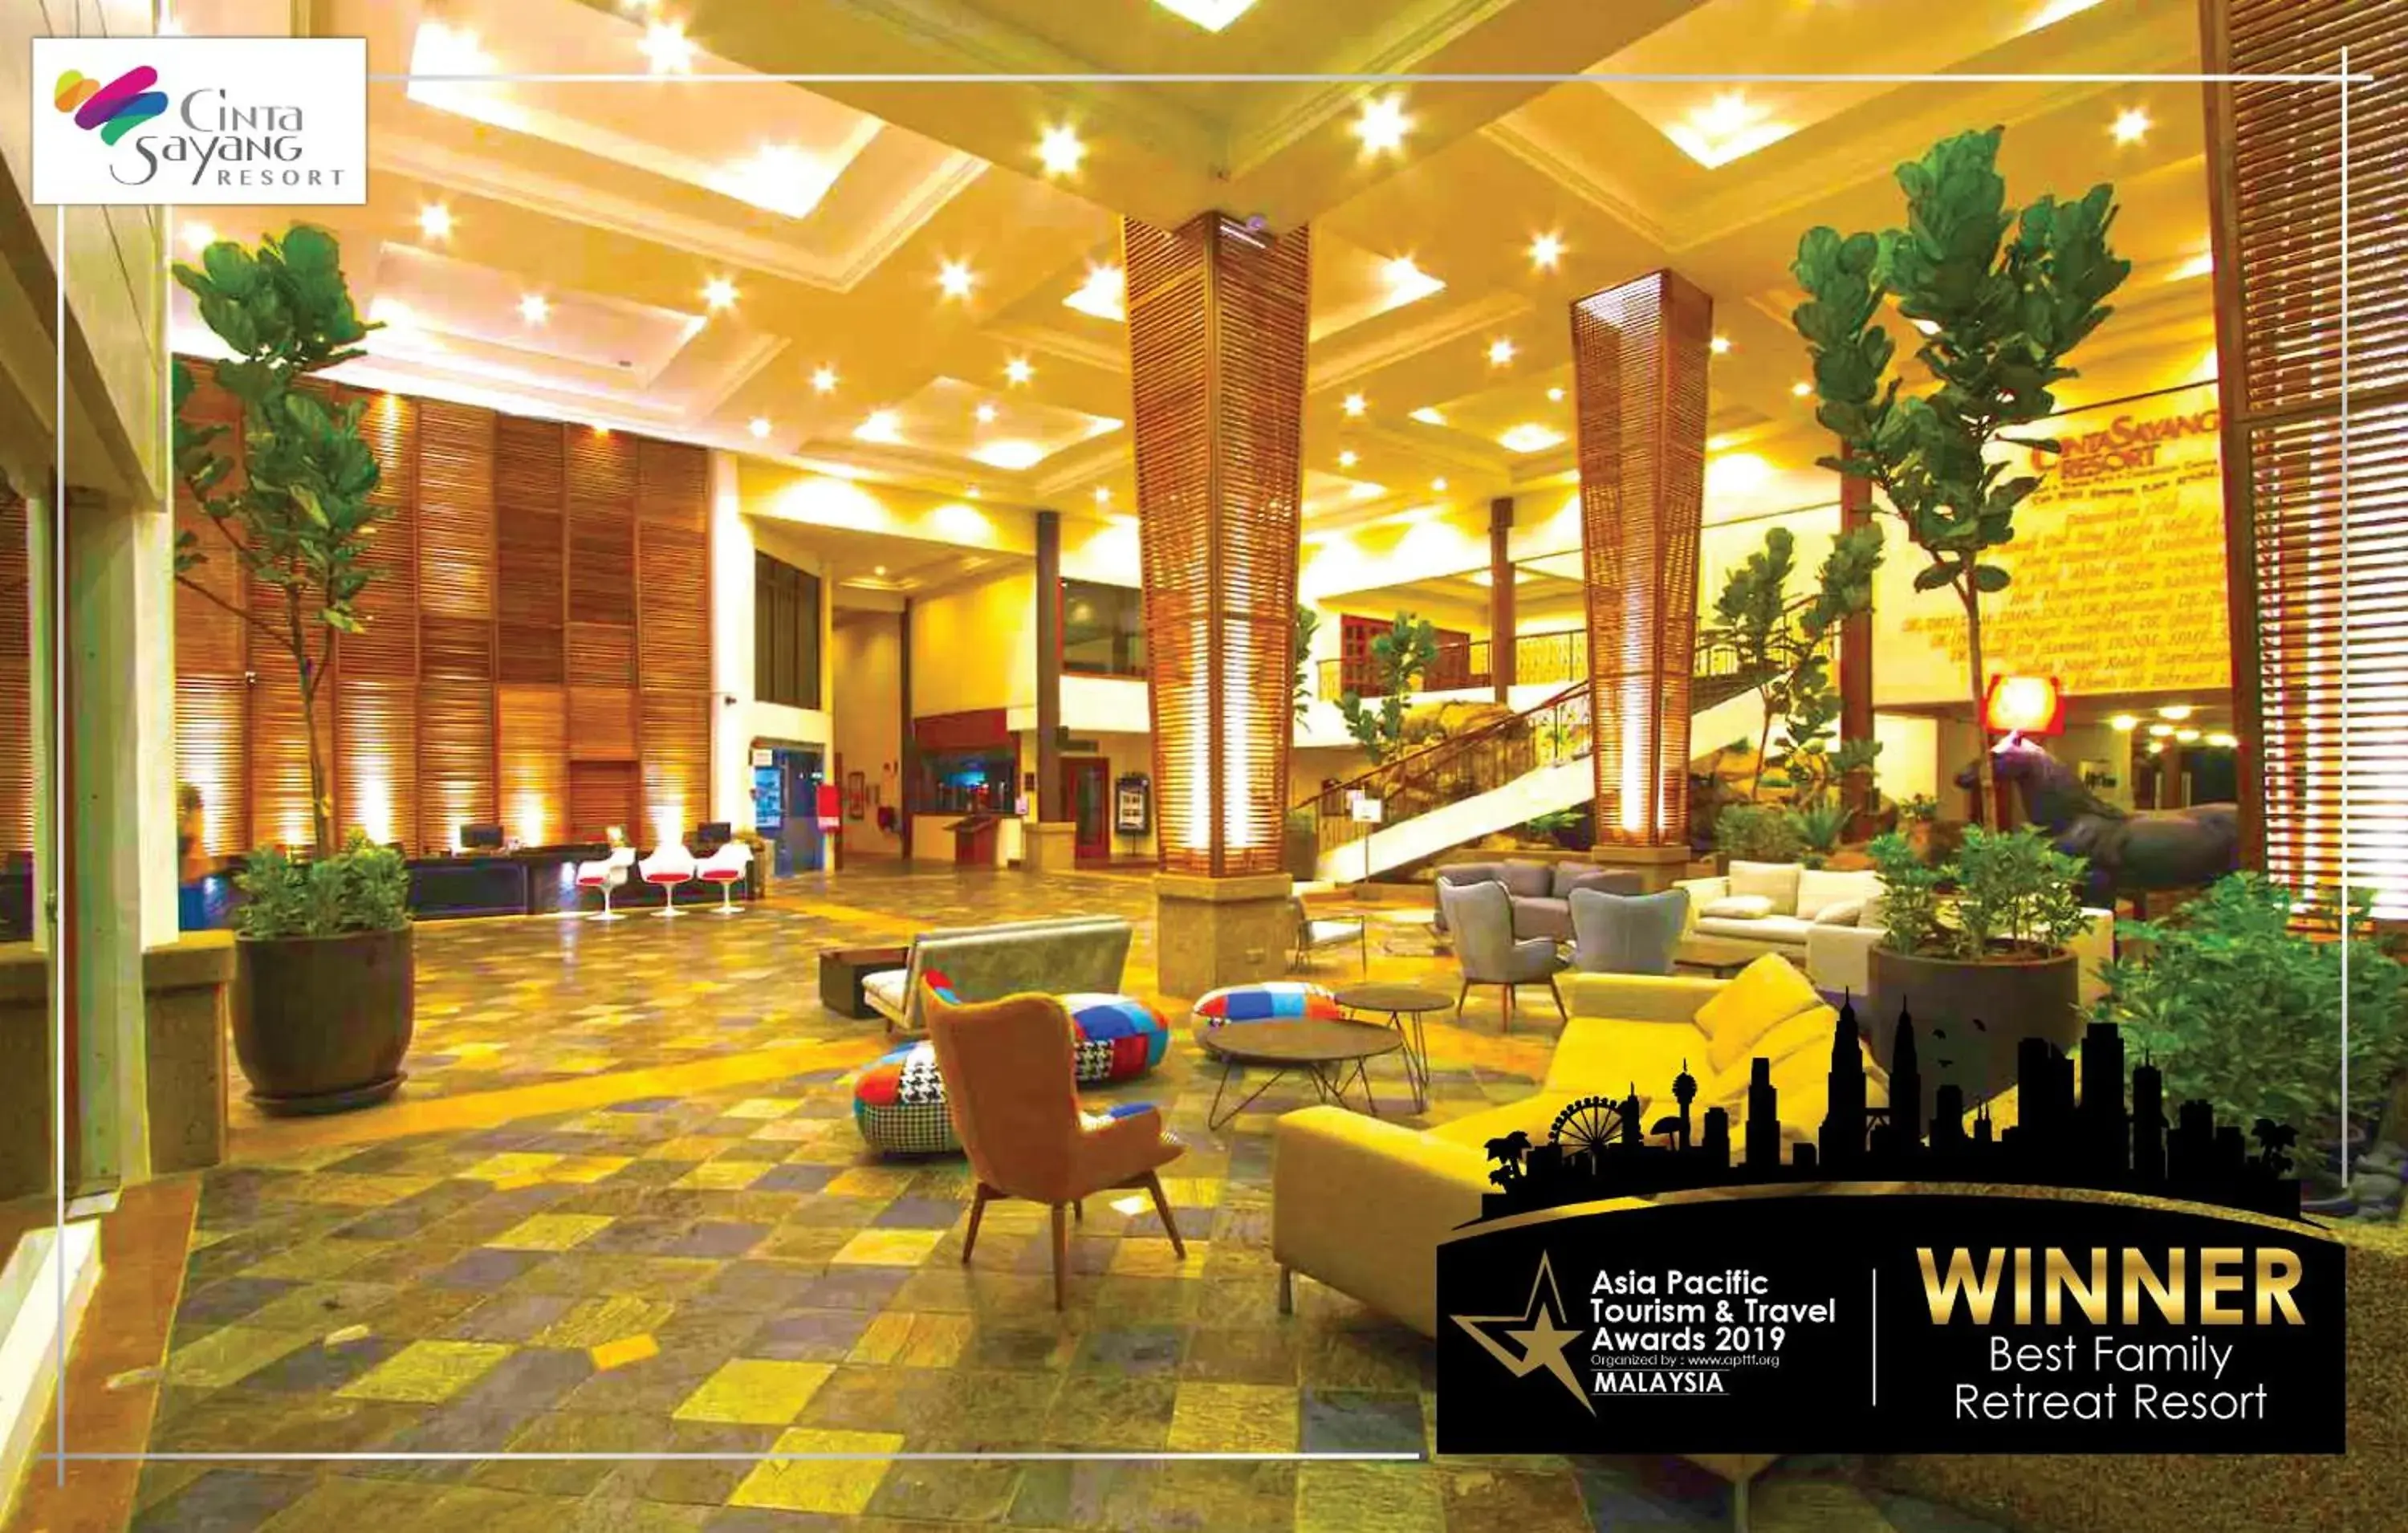 Certificate/Award, Restaurant/Places to Eat in Cinta Sayang Resort